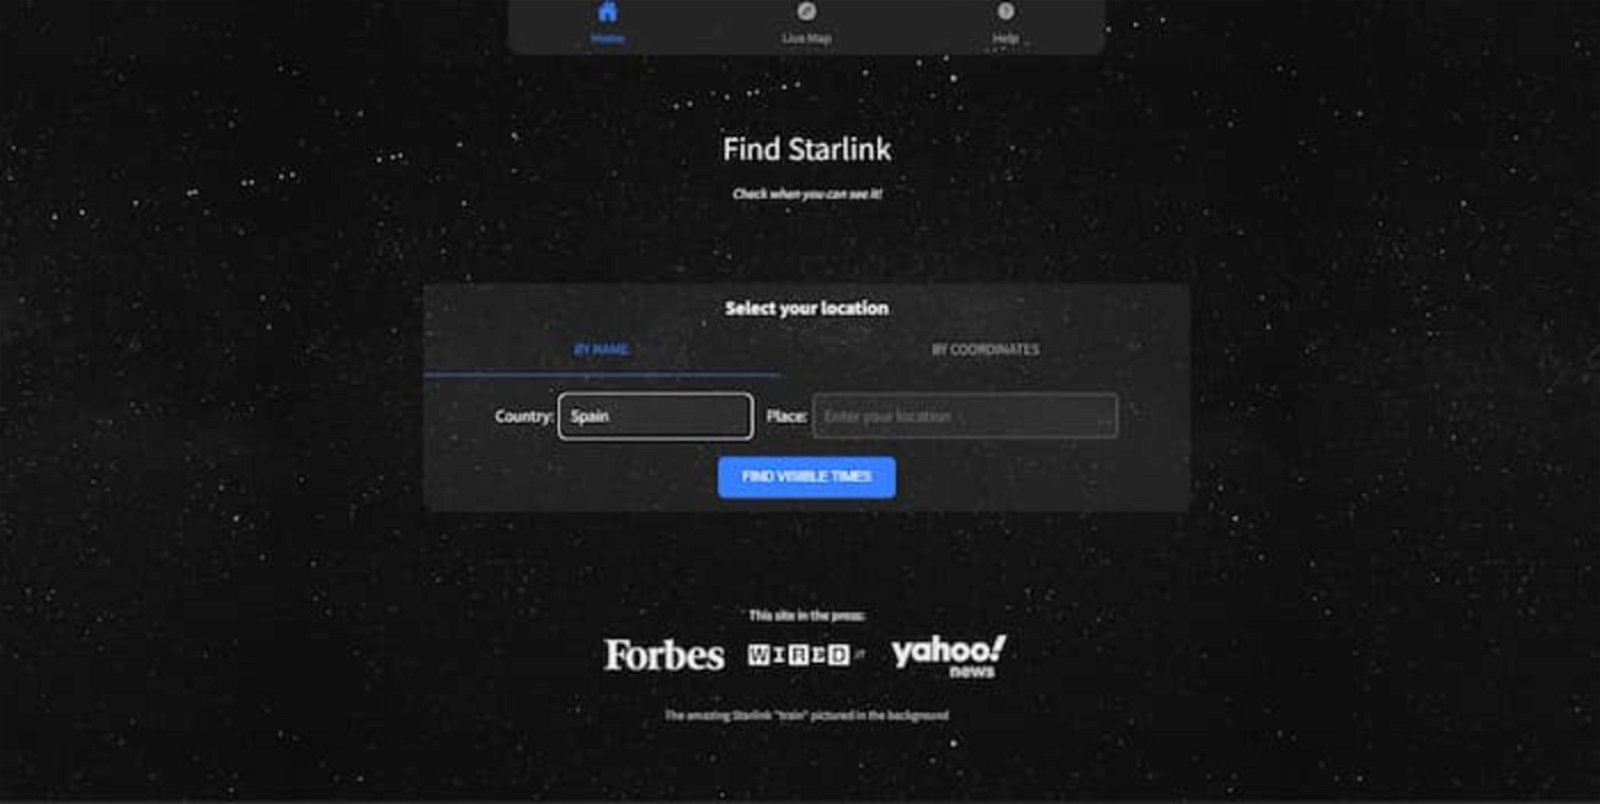 Esta página te permite buscar la ubicación de los satélites StarLink en tiempo real